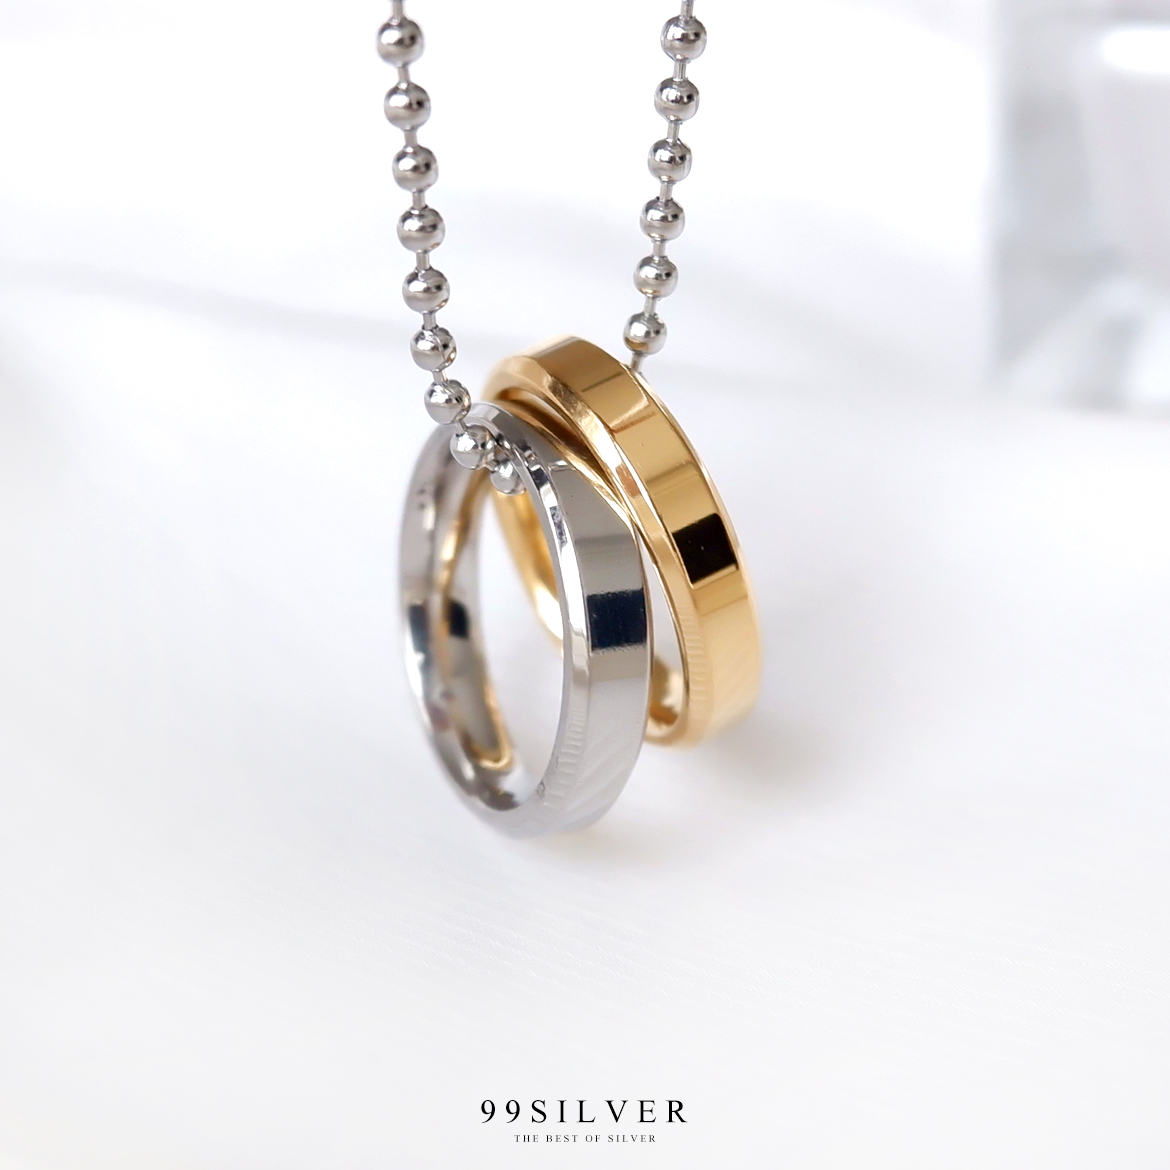 สร้อยจี้แหวนคู่ ตัวเรือนแหวนเป็นสแตนเลสแท้ สีเงินและสีทอง มาพร้อมสร้อยสวยงาม